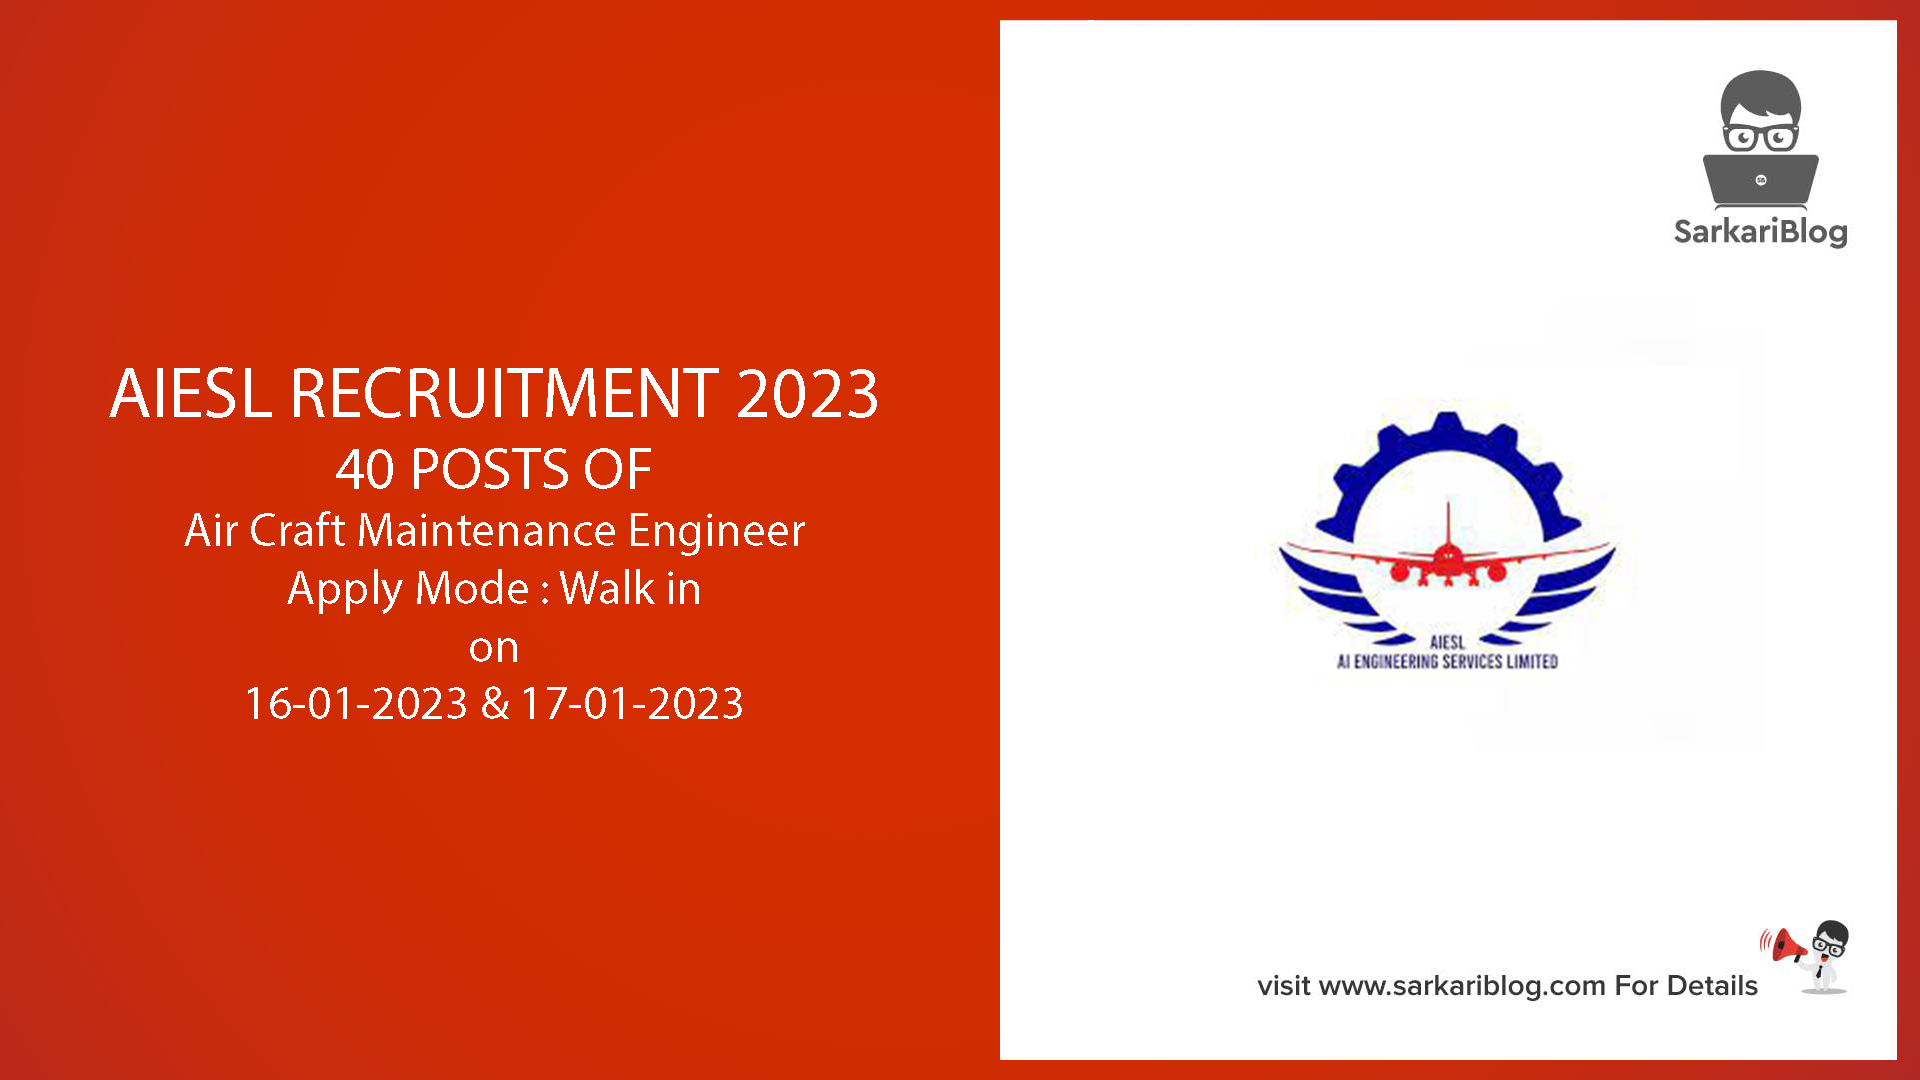 AIESL Recruitment 2023